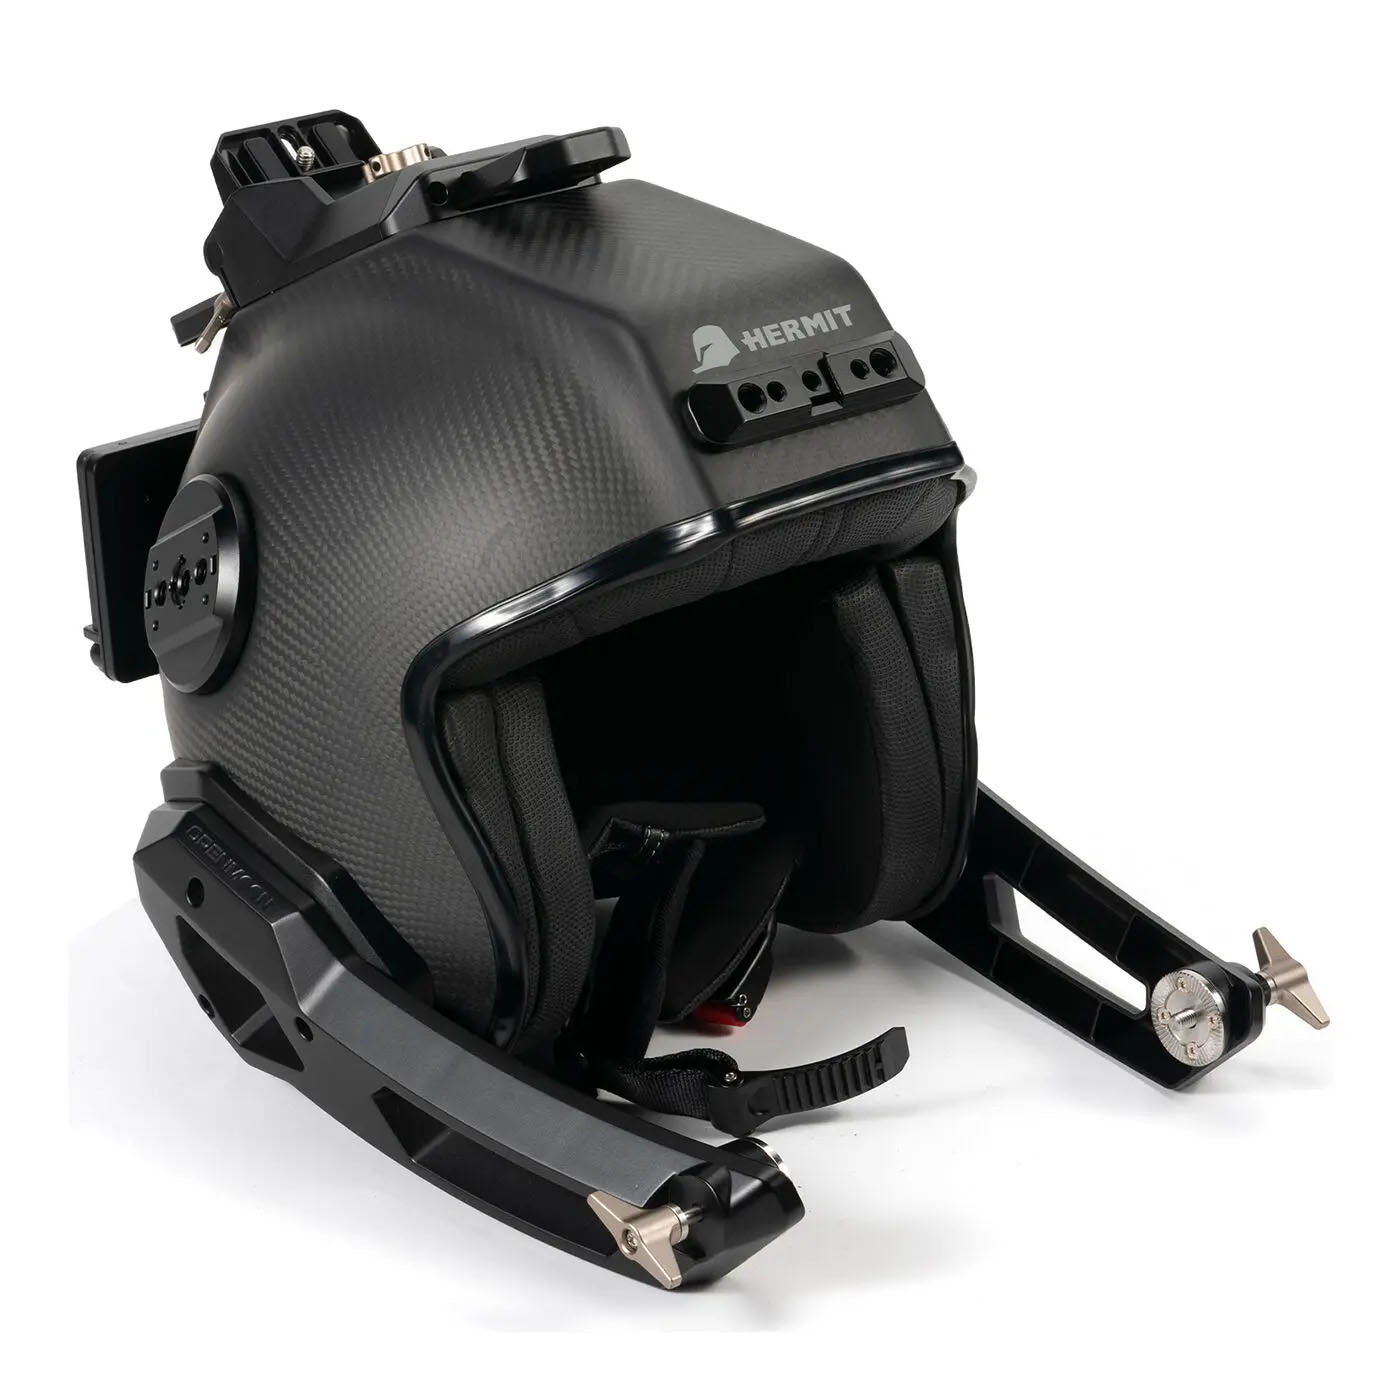 TILTA Hermit POV Support System (Helmet) (XL) - Gold Mount TA-HR-XL-AB